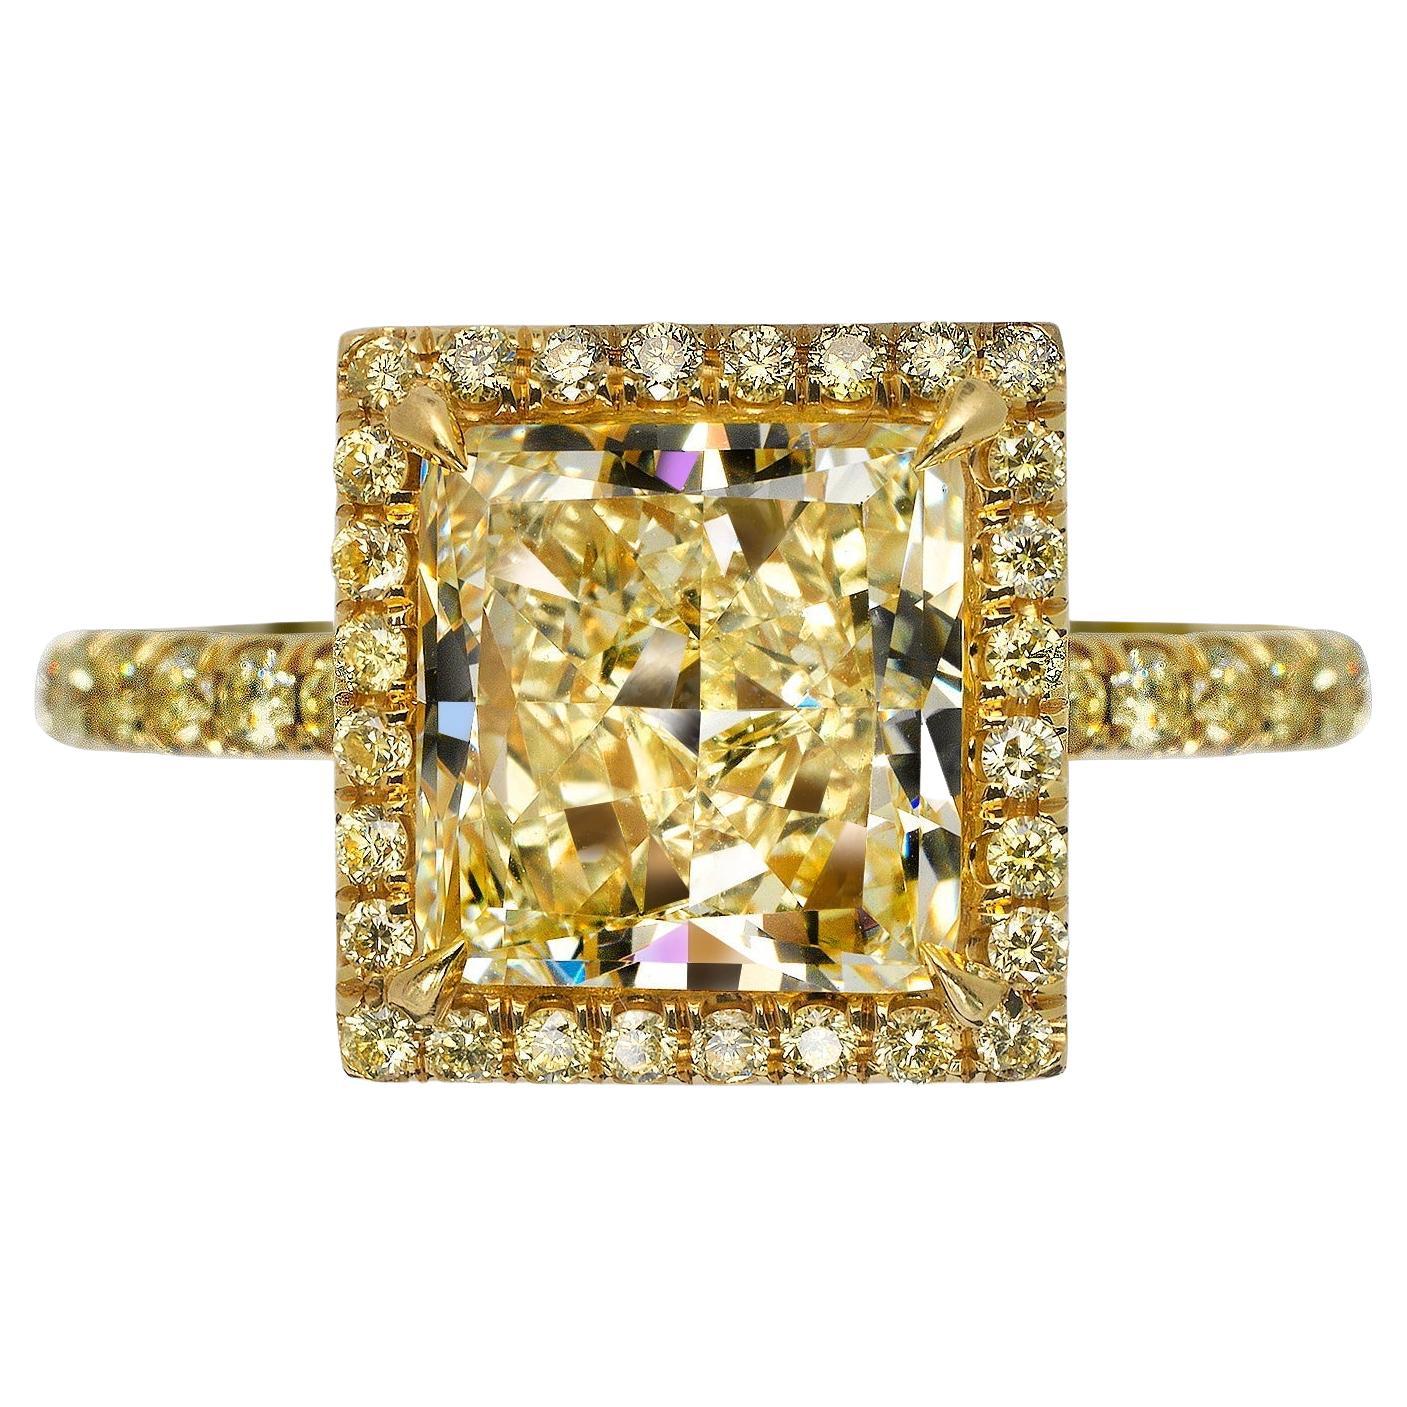 4 Carat Princess Cut Diamond Engagement Ring GIA Certified Y TO Z Range VS2